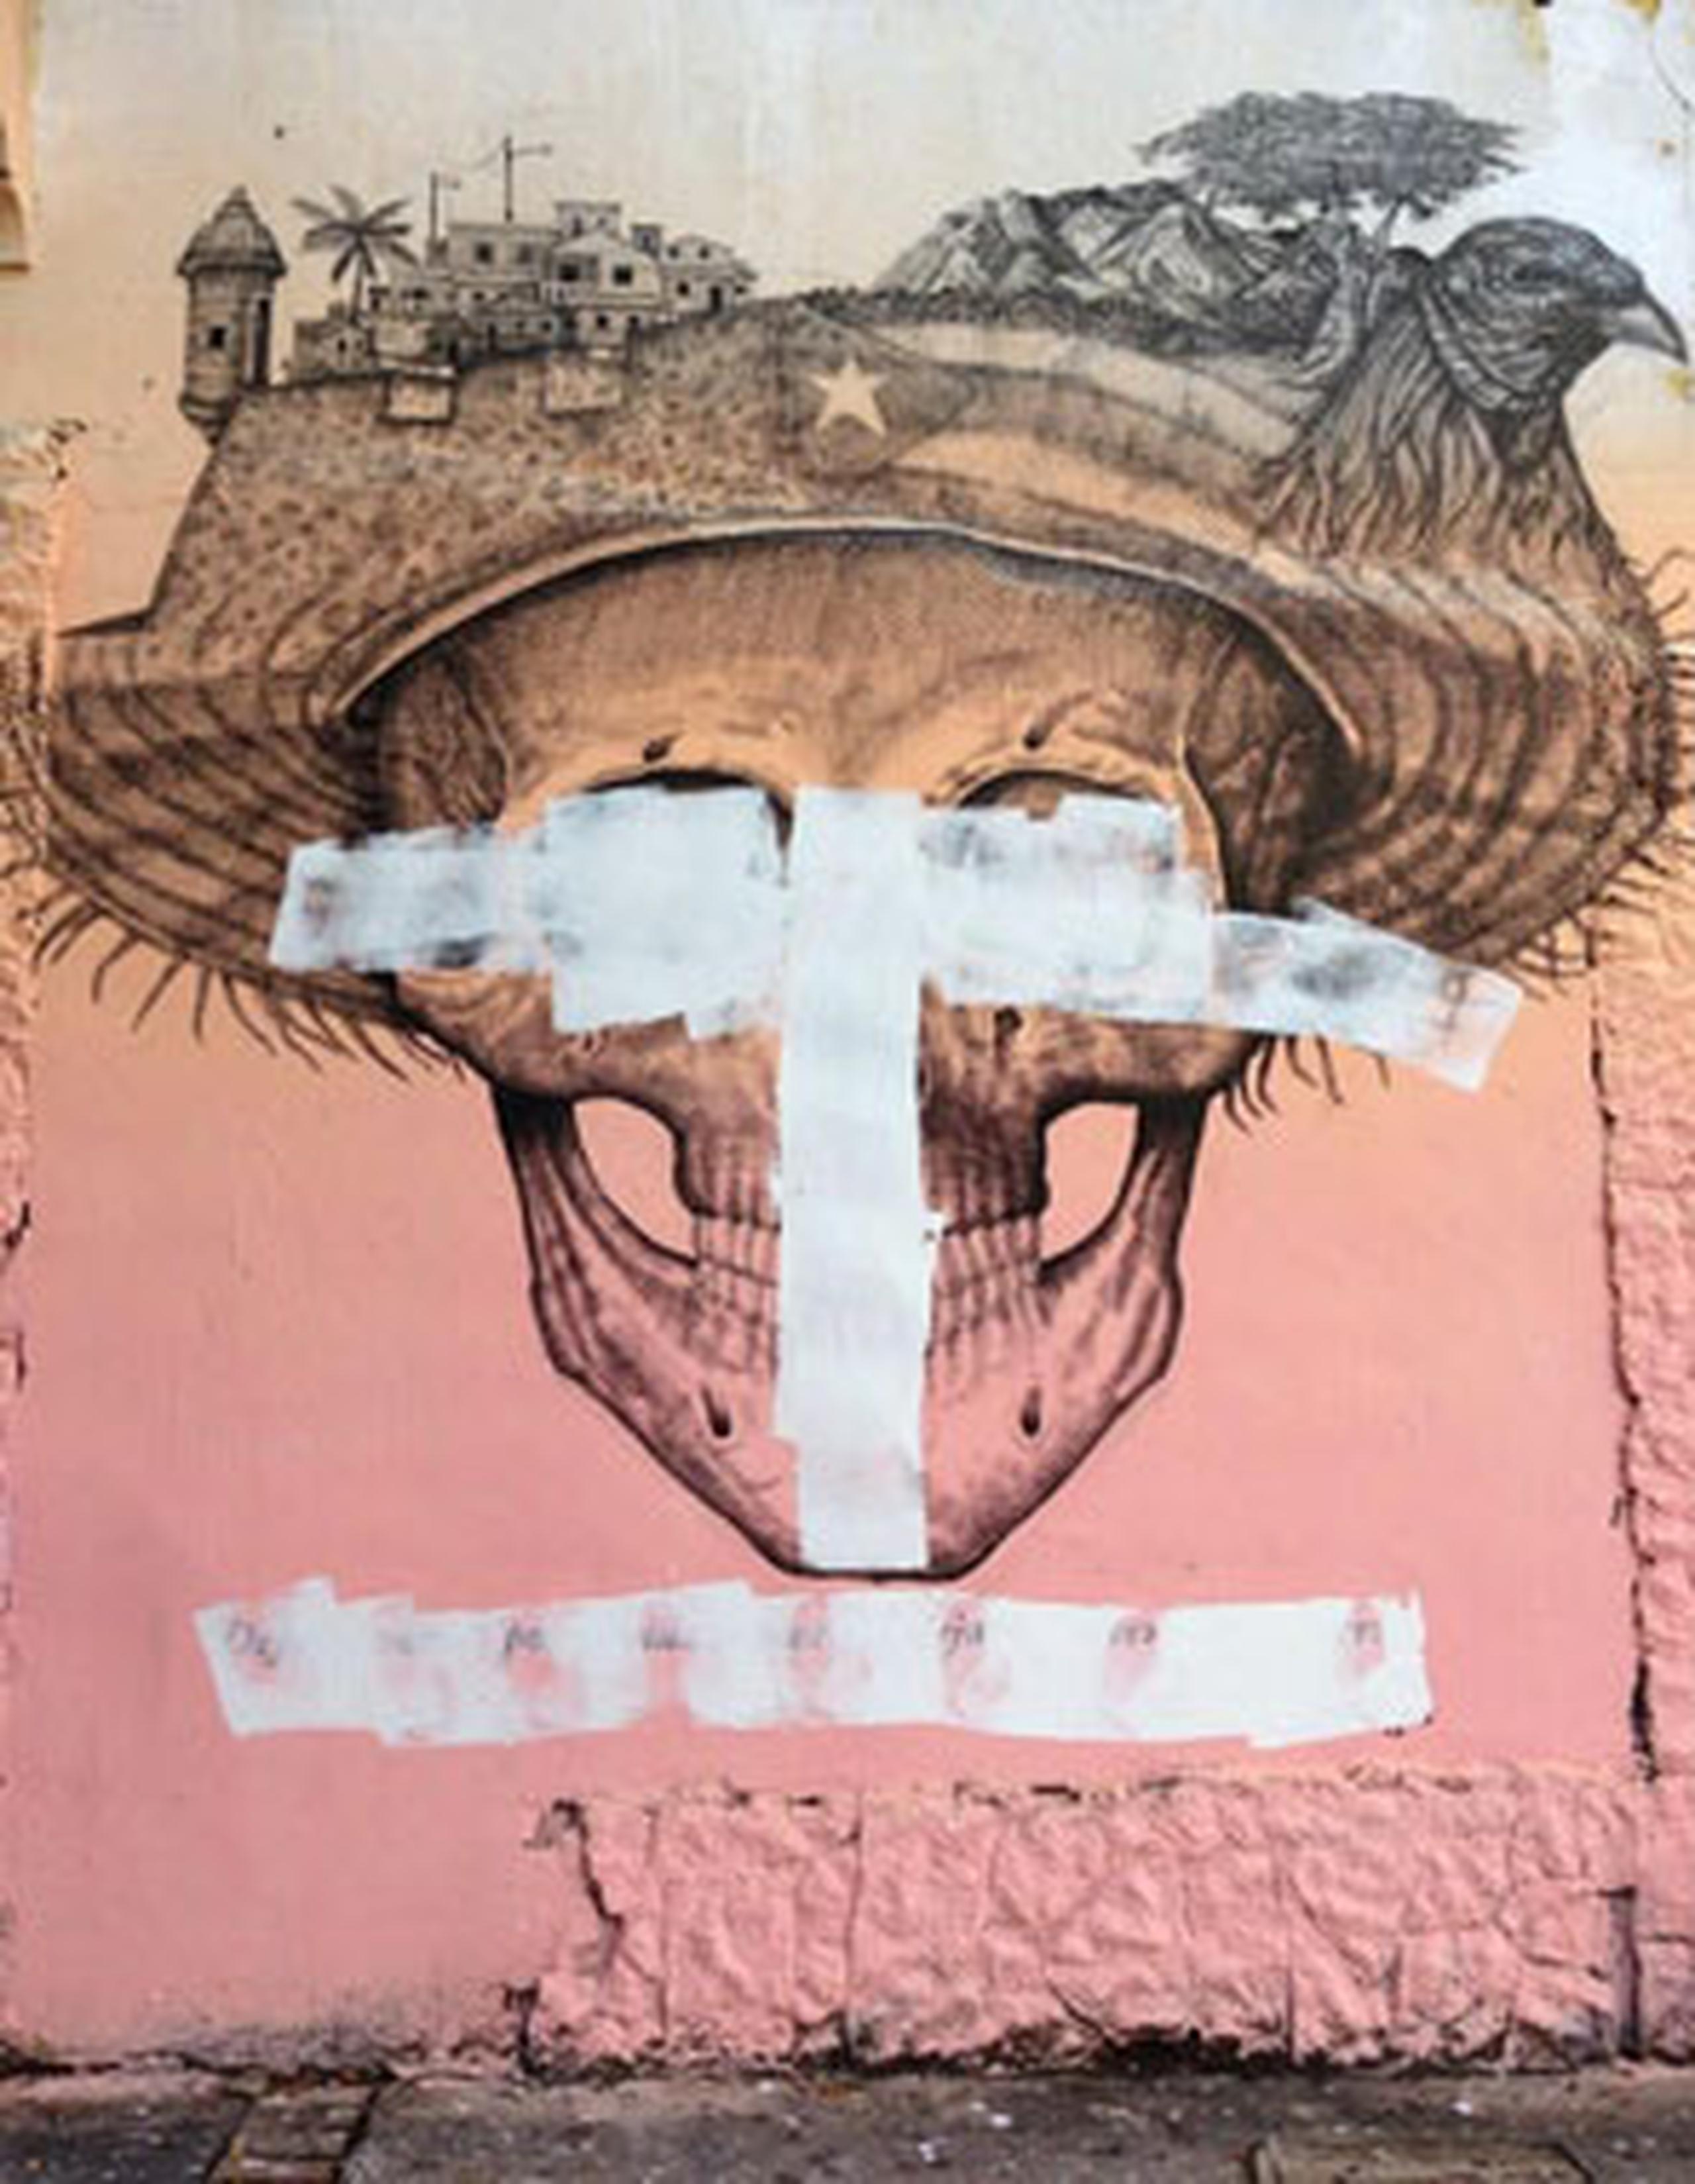 El mural del boricua Alexis Díaz que fue mutilado ilustra una calavera y en su cabeza una pava, la bandera de Puerto Rico, un ave, montañas, un flamboyán, pequeñas casas y una garita, de las que se ven en la ciudad amurallada del Viejo San Juan.(Twitter / @jorgejmuniz)